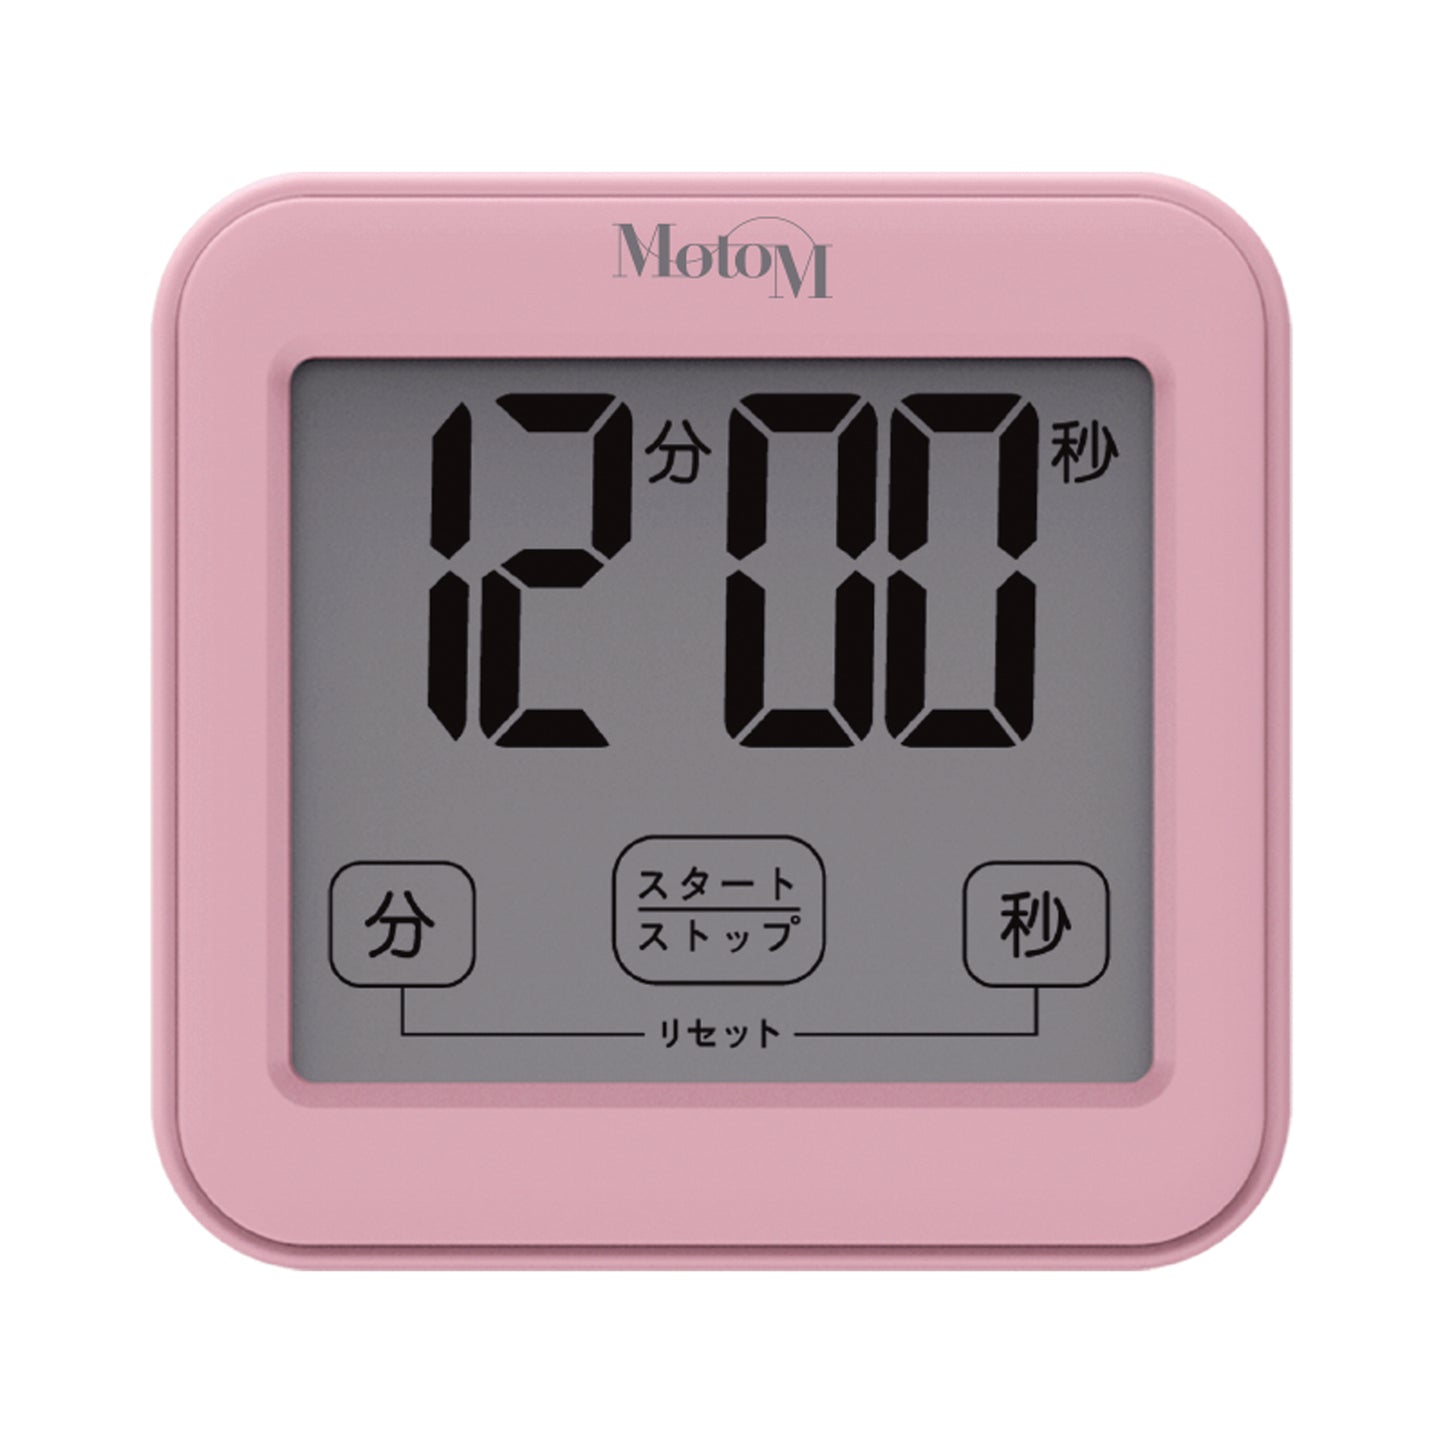 温湿度計付きキッチンタイマー GHA006 ダークブラウン ピンク ホワイト 画像をギャラリービューアに読み込みます。
